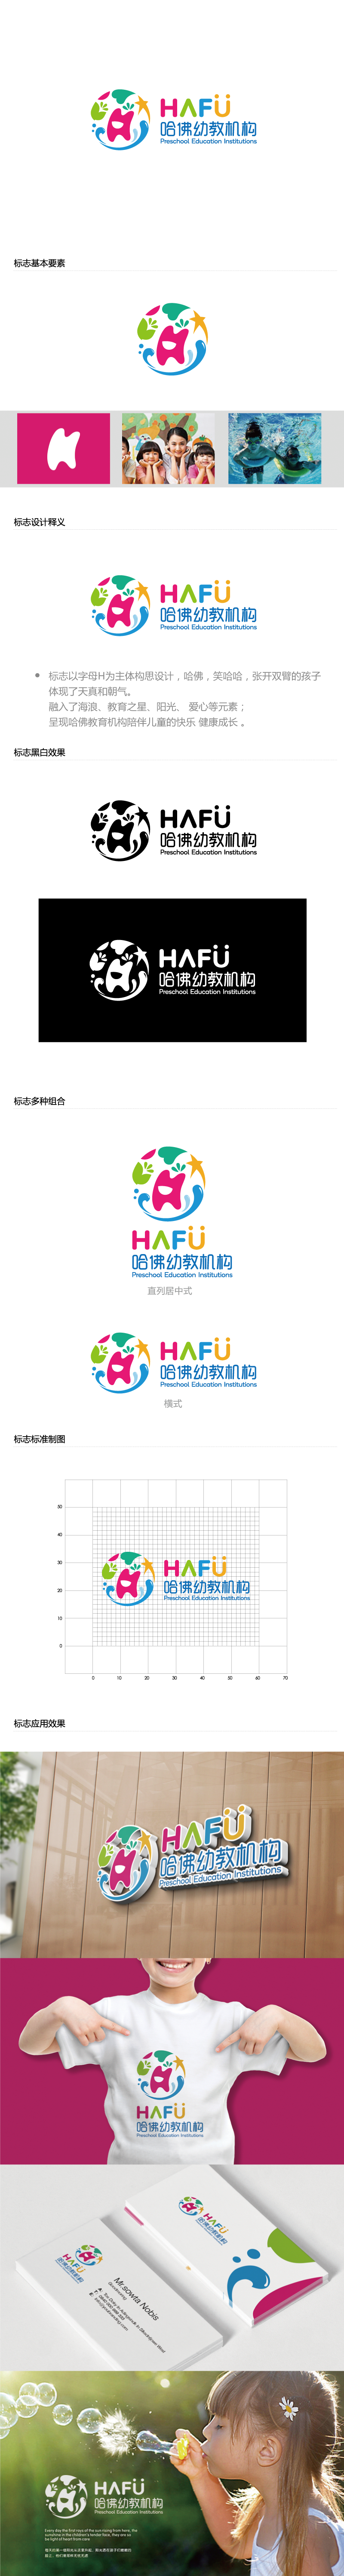 张晓明的哈佛幼教机构logo设计